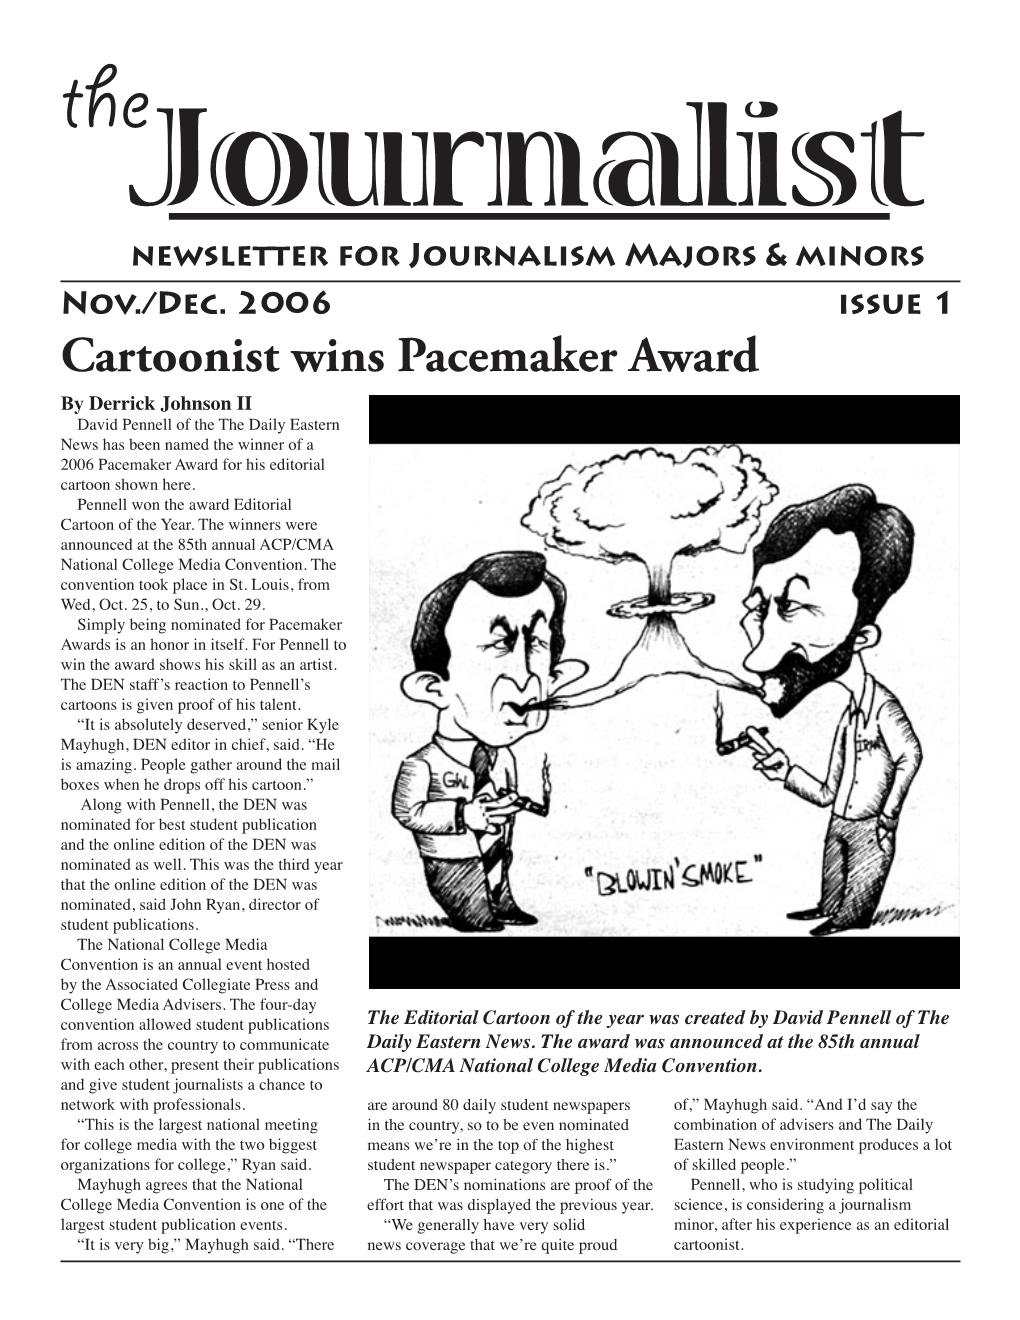 Cartoonist Wins Pacemaker Award